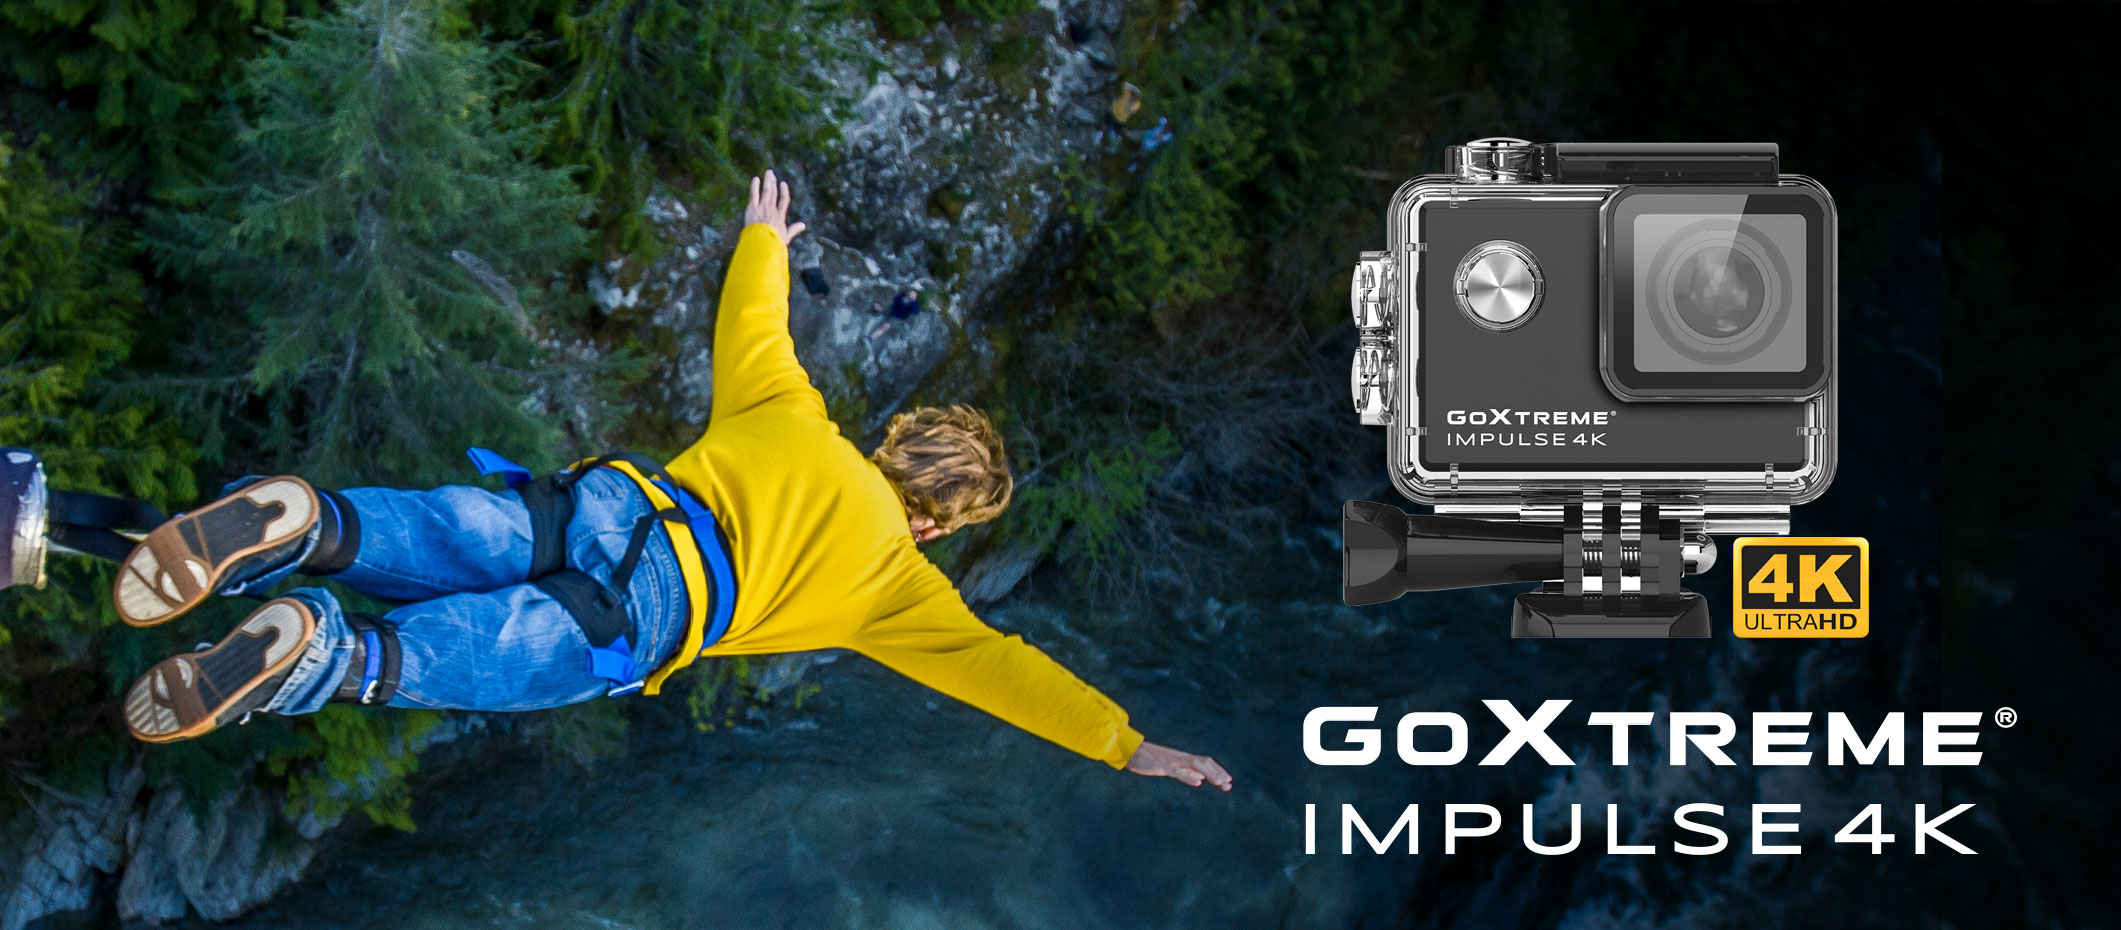 GoXtreme Impulse 4K liefert 4K Action-Videos in bester Qualität und in 170˚ Weitwinkel-Ansicht